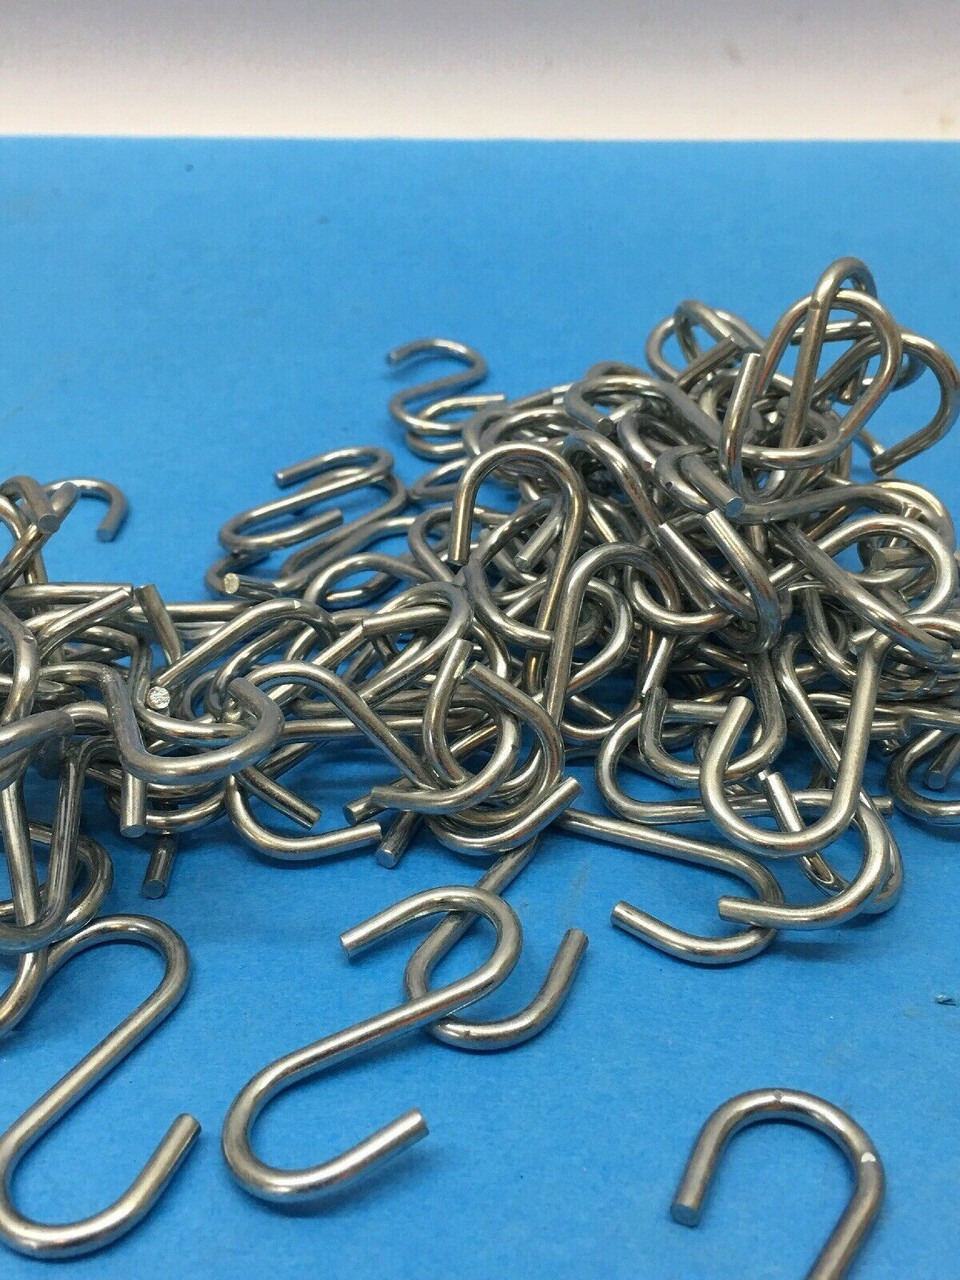 S Steel Hookchain 9381T24 Peerless Chain Lot of 100